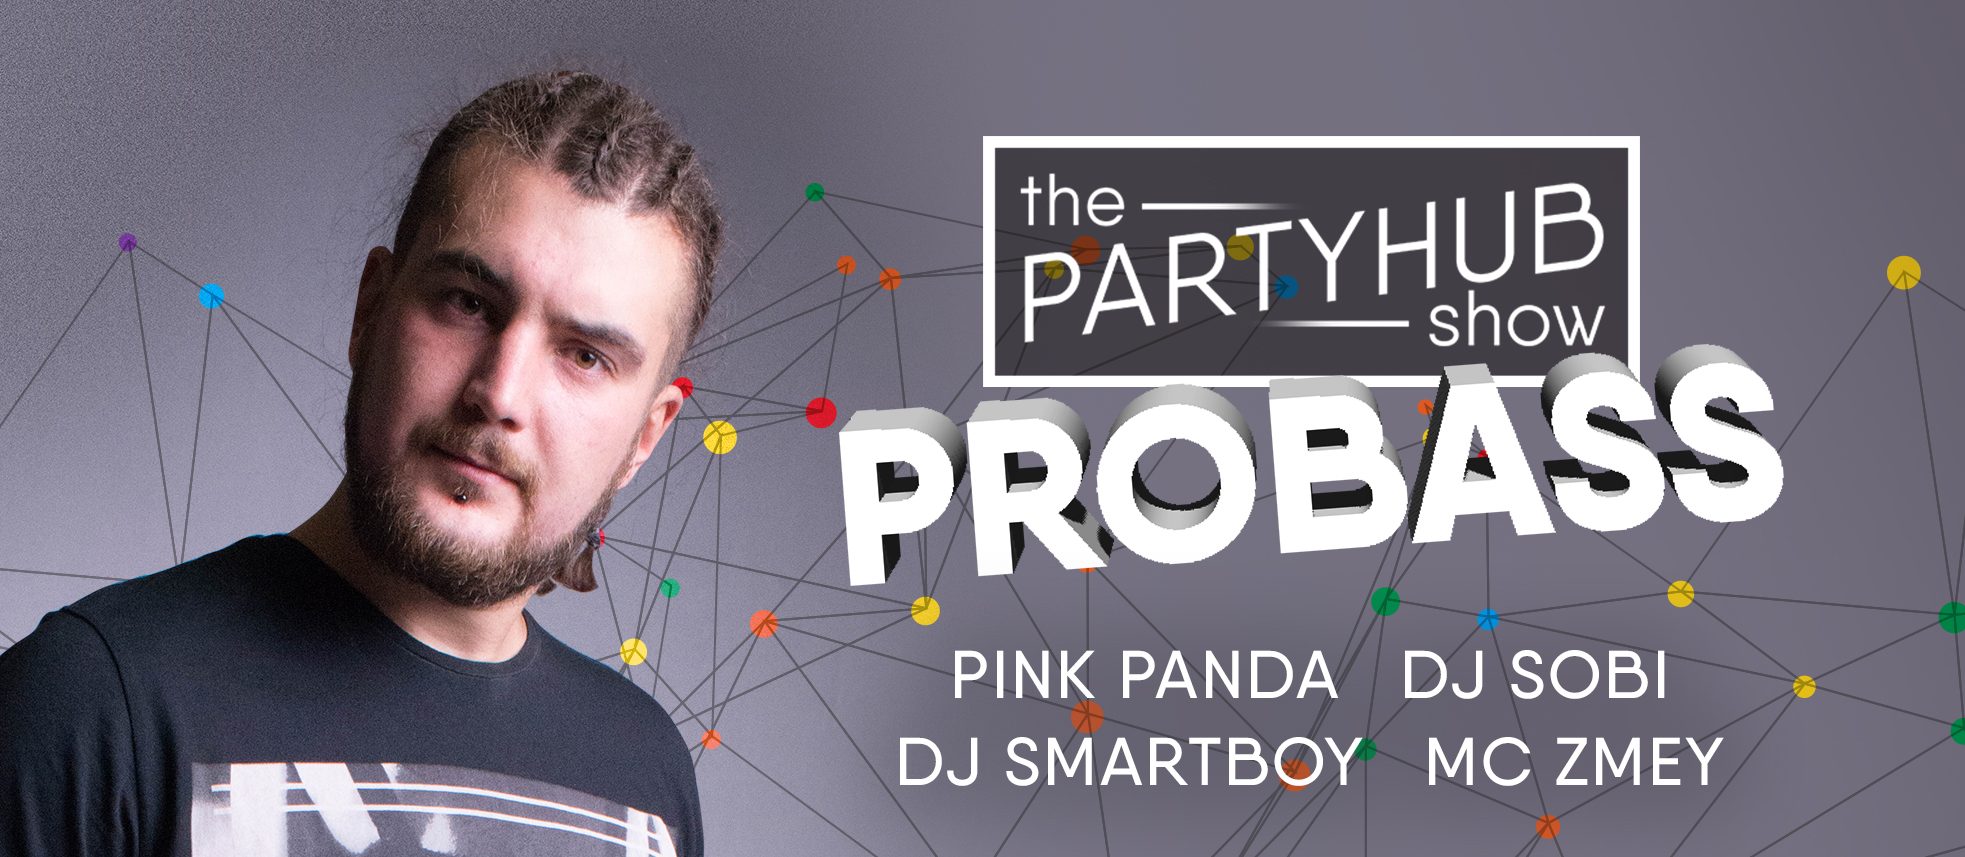 PartyHub show ft. Dj Probass, Pink Panda show